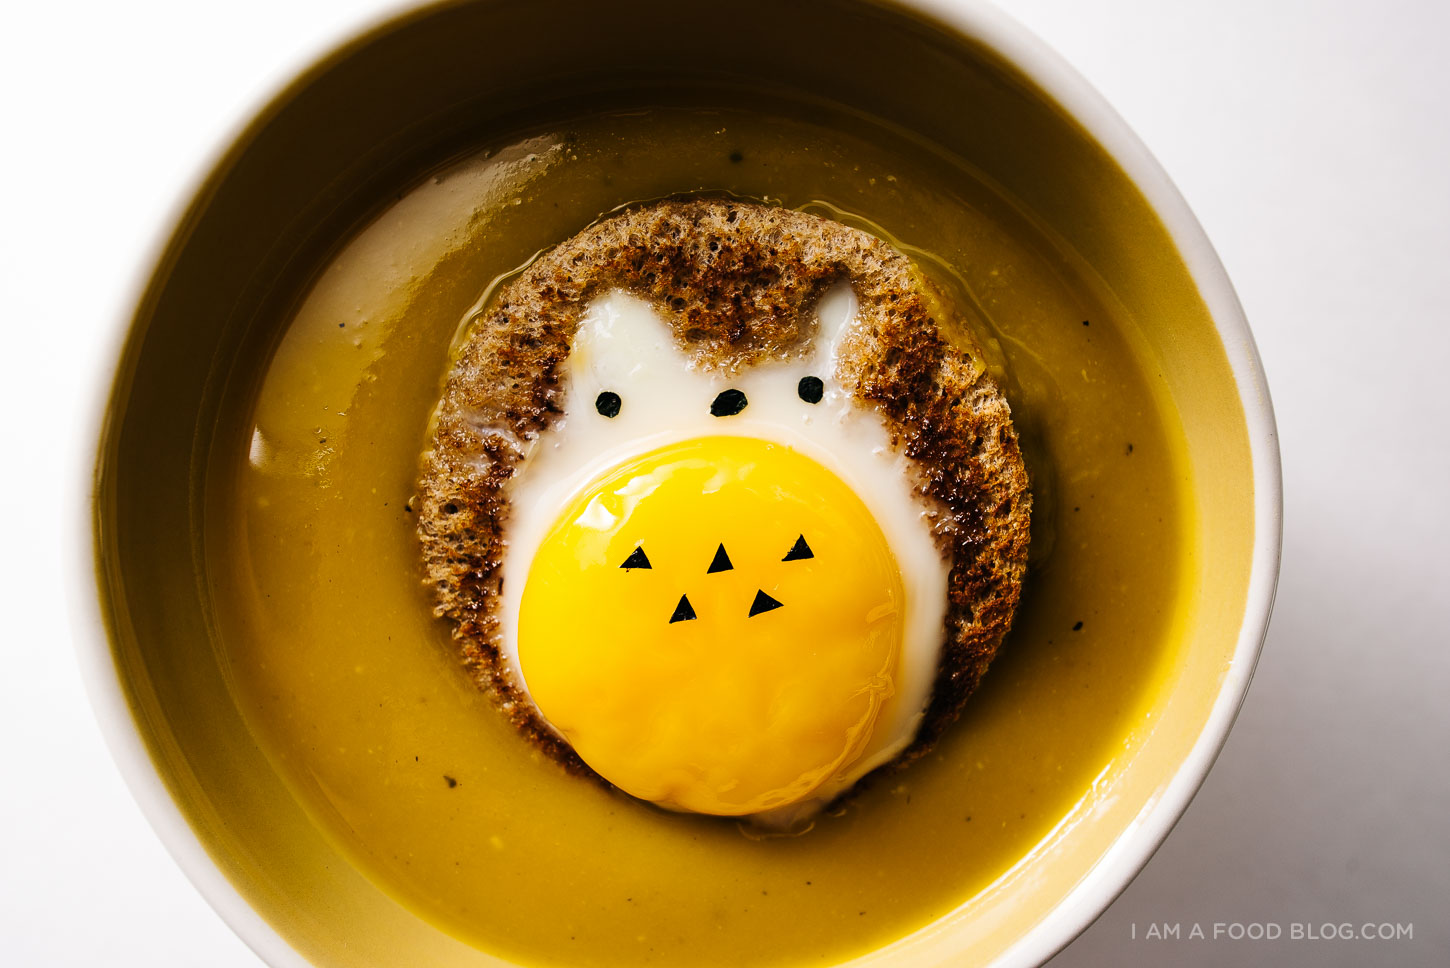 Delikte totoro yumurtası ile kolay kabocha çorbası tarifi - www.http://elcomensal.es/